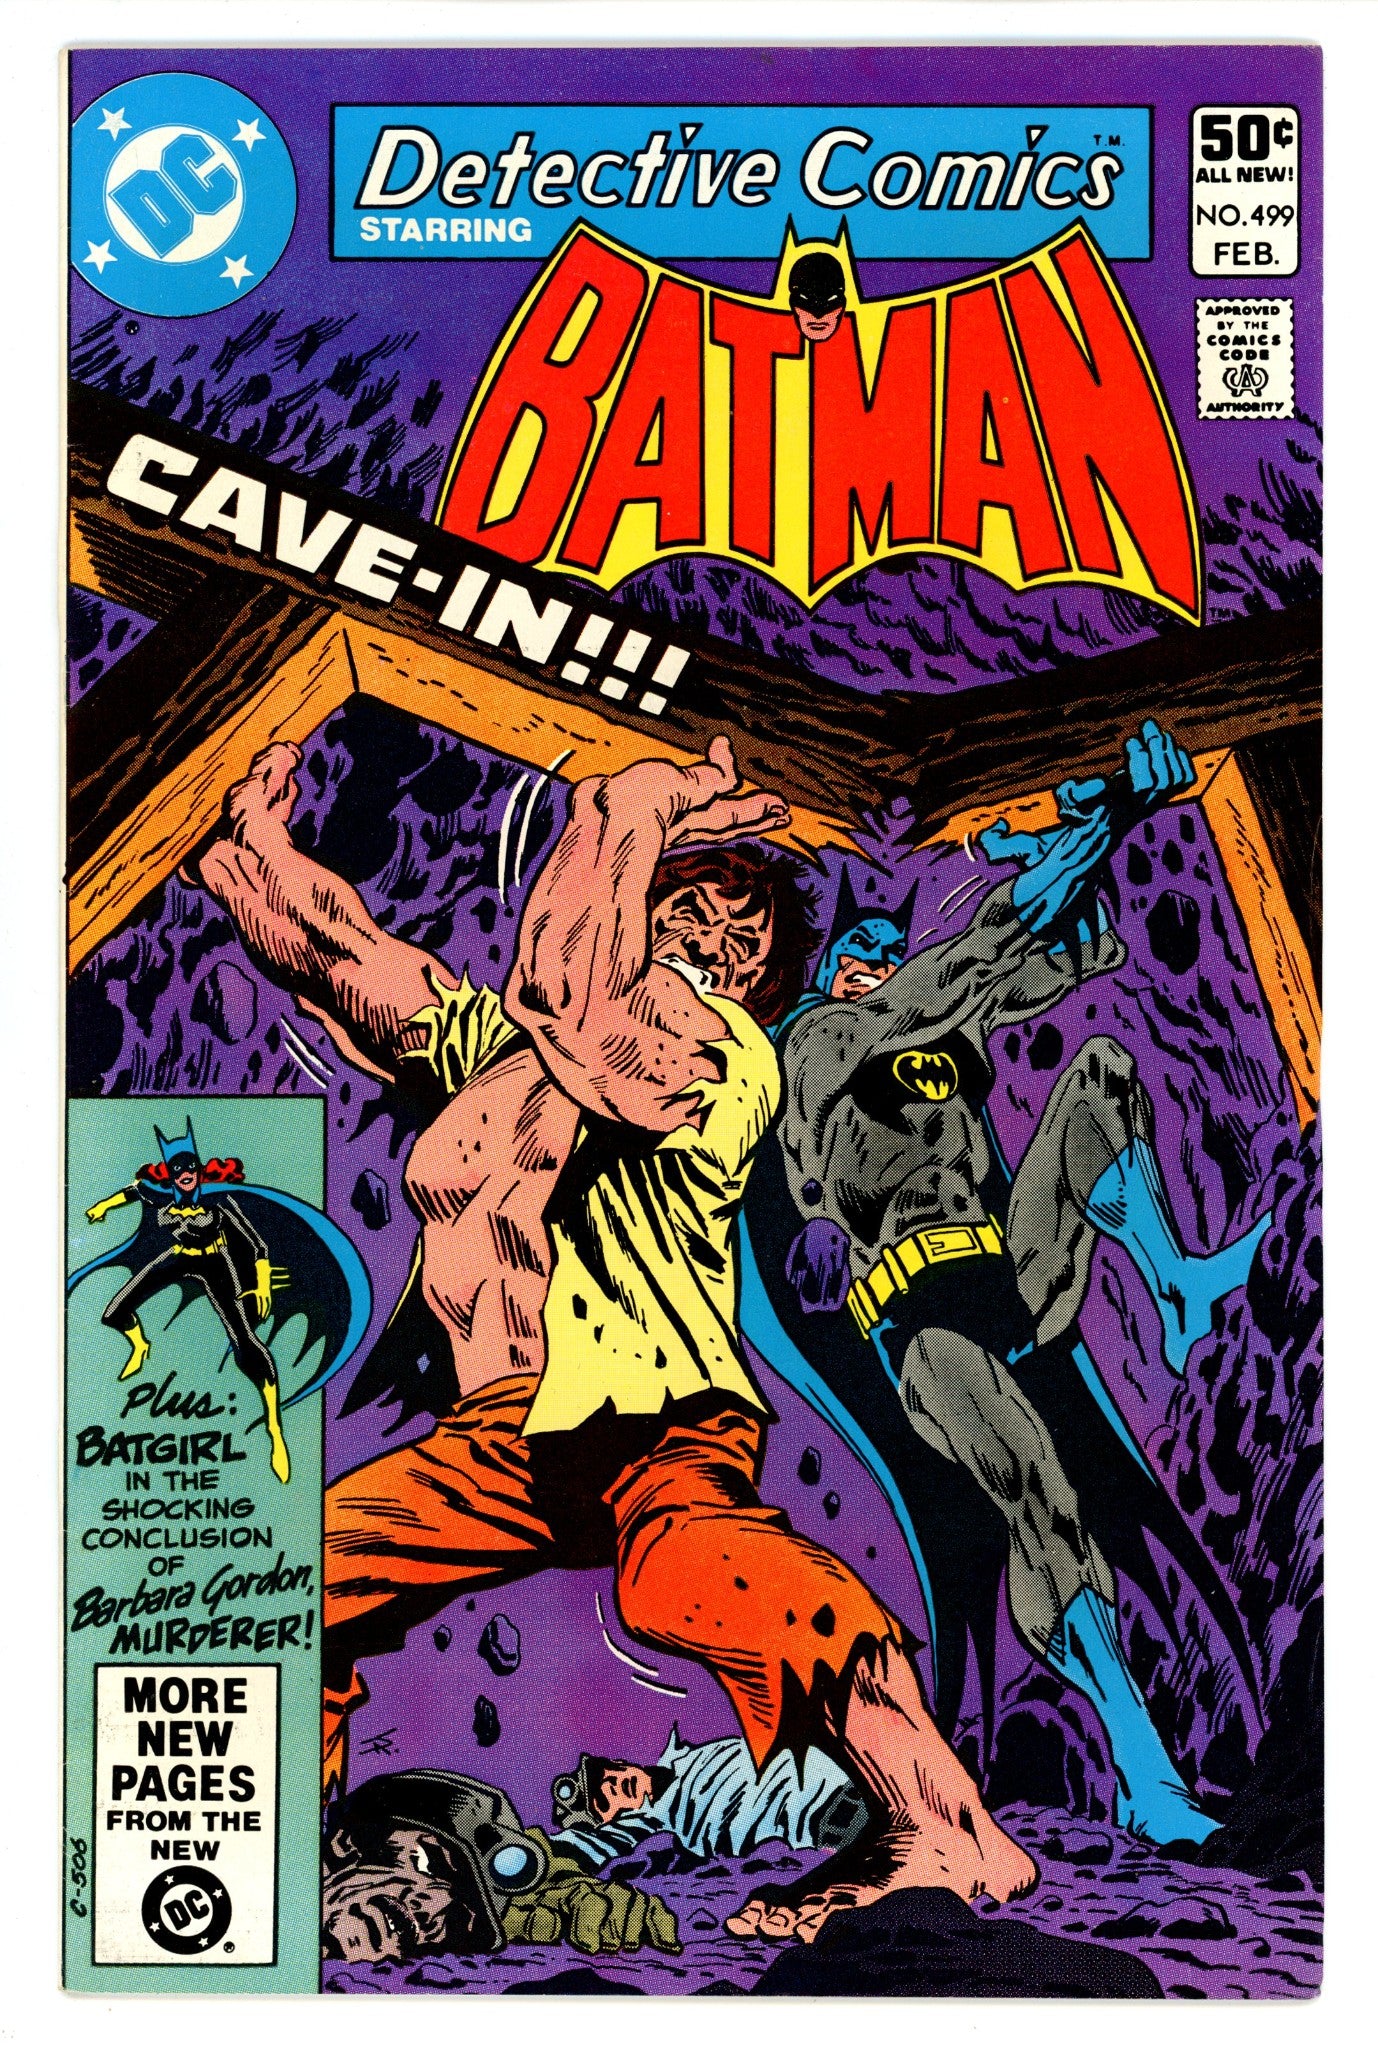 Detective Comics Vol 1 499 VF- (7.5) (1981) 